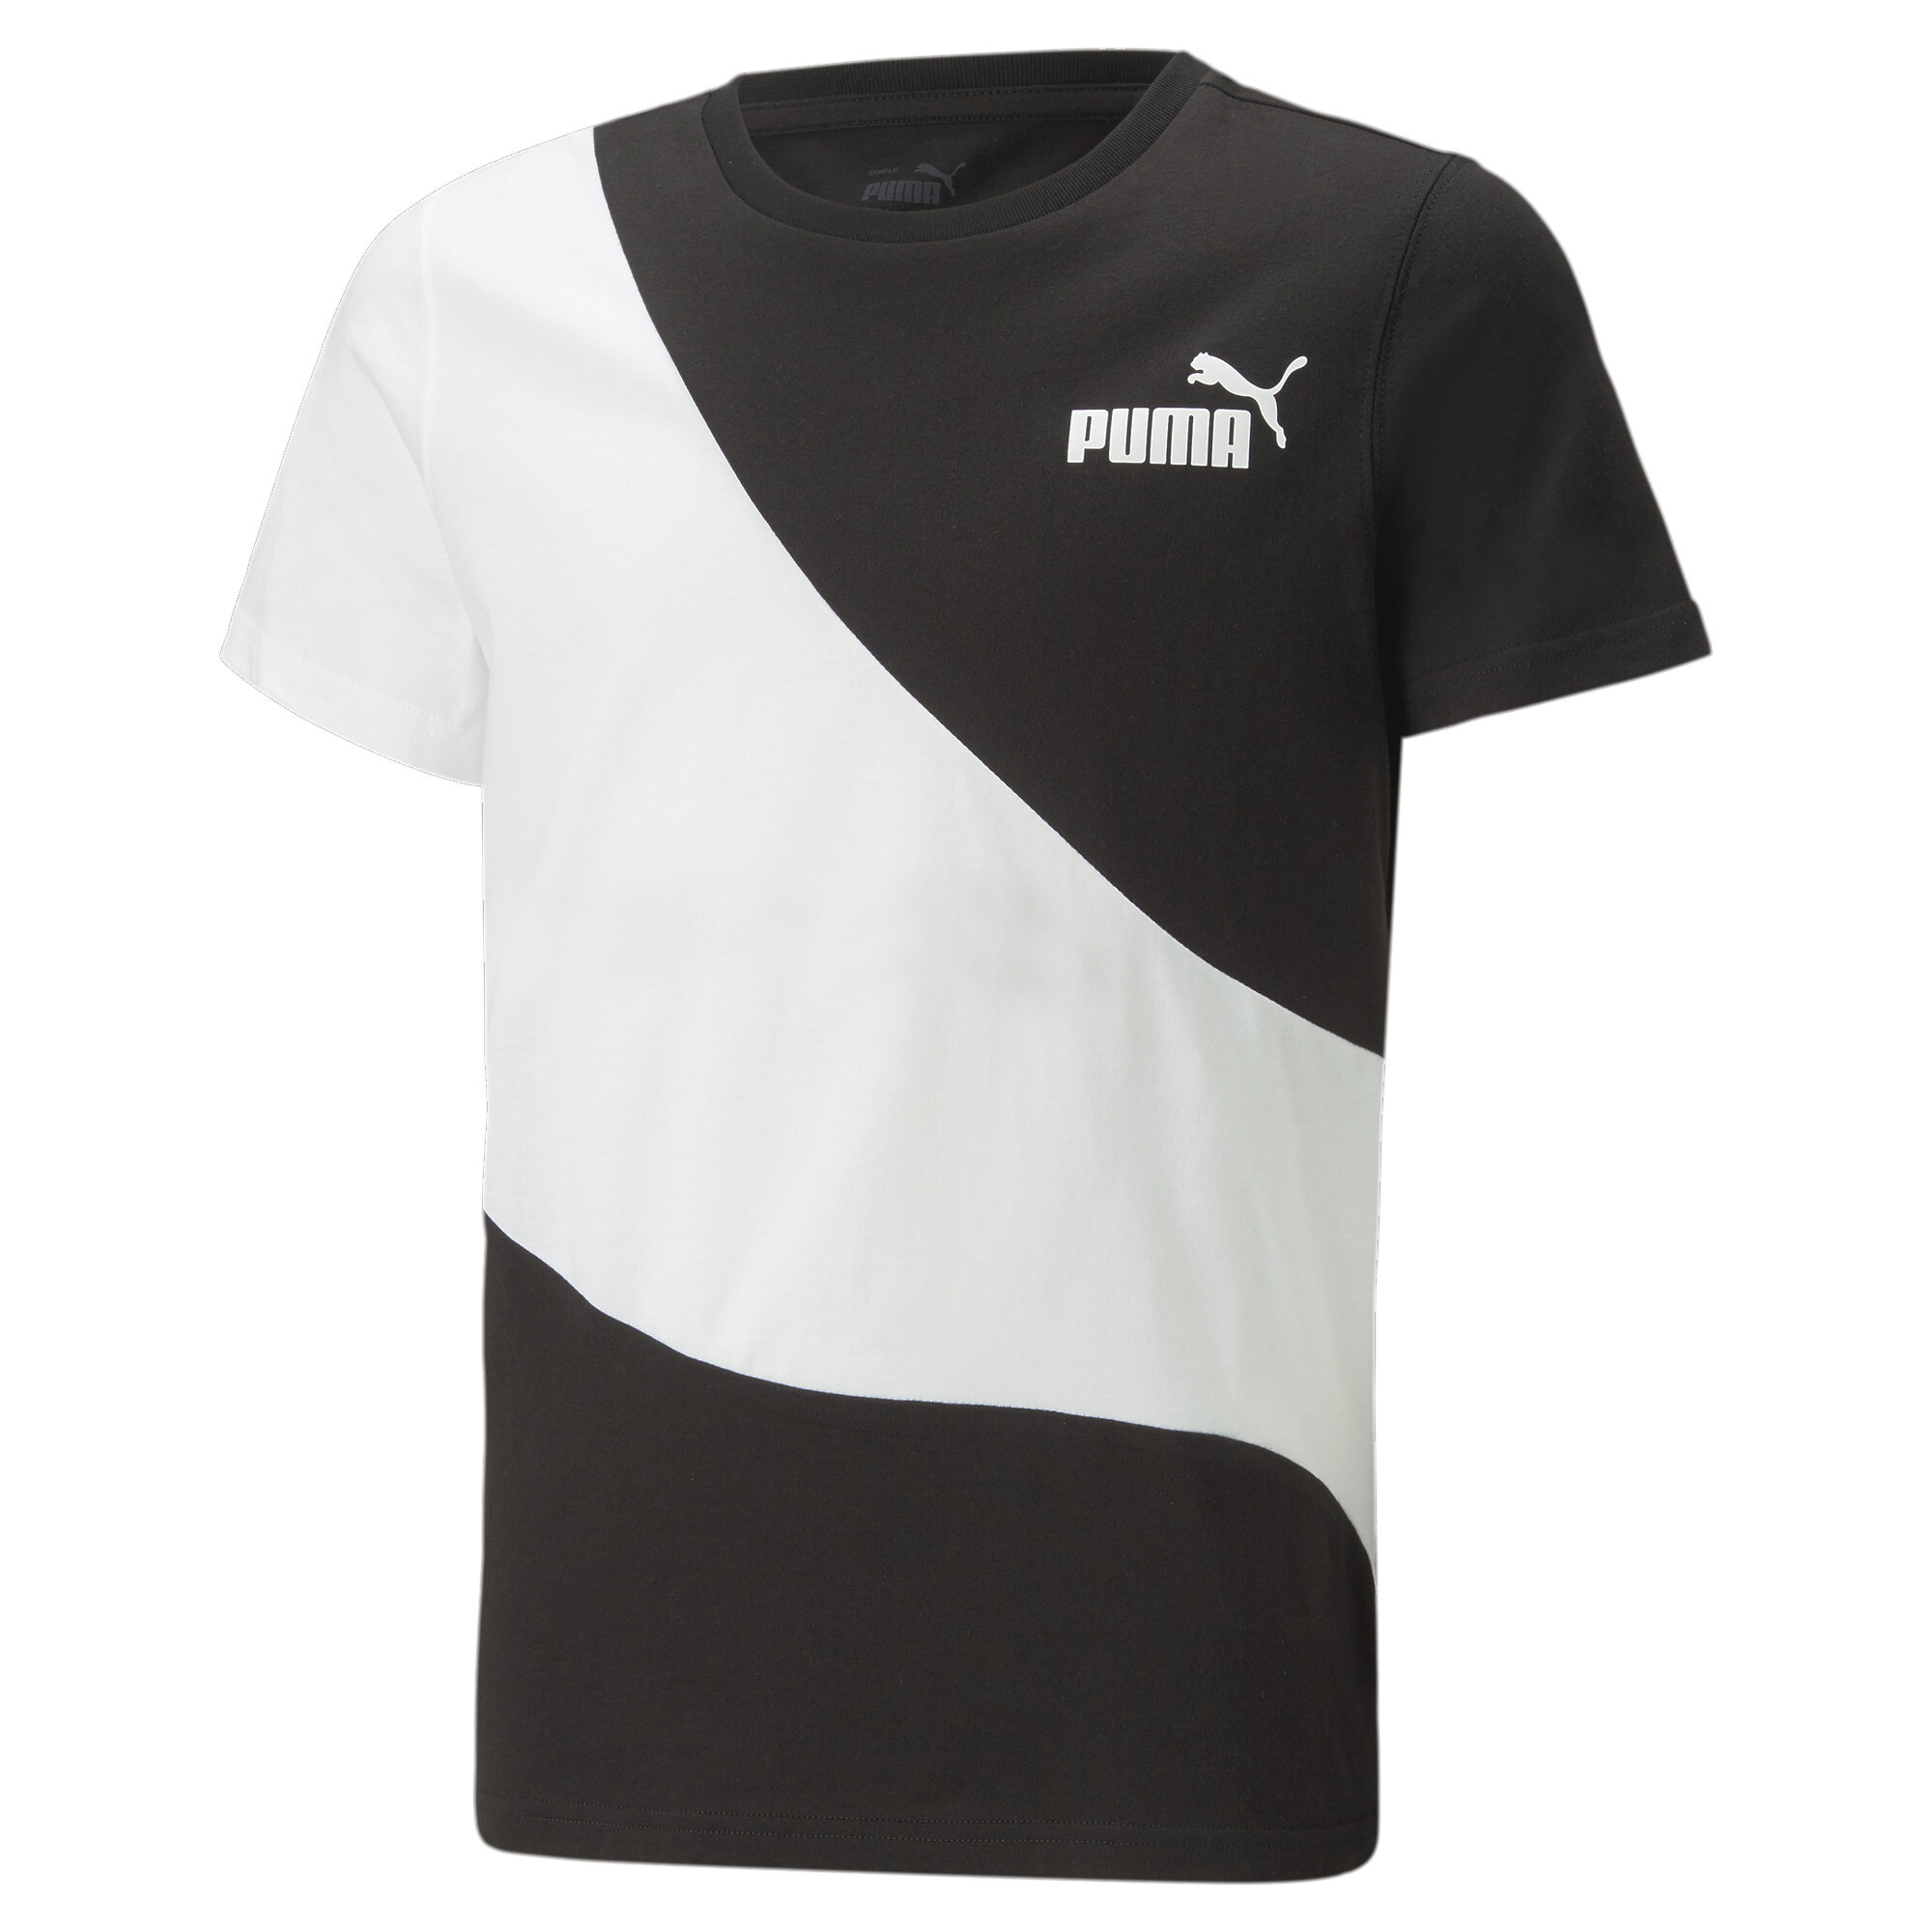  プーマ キッズ ボーイズ PUMA POWER キャット 半袖 Tシャツ 120-160cm メンズ PUMA Black ｜PUMA.com